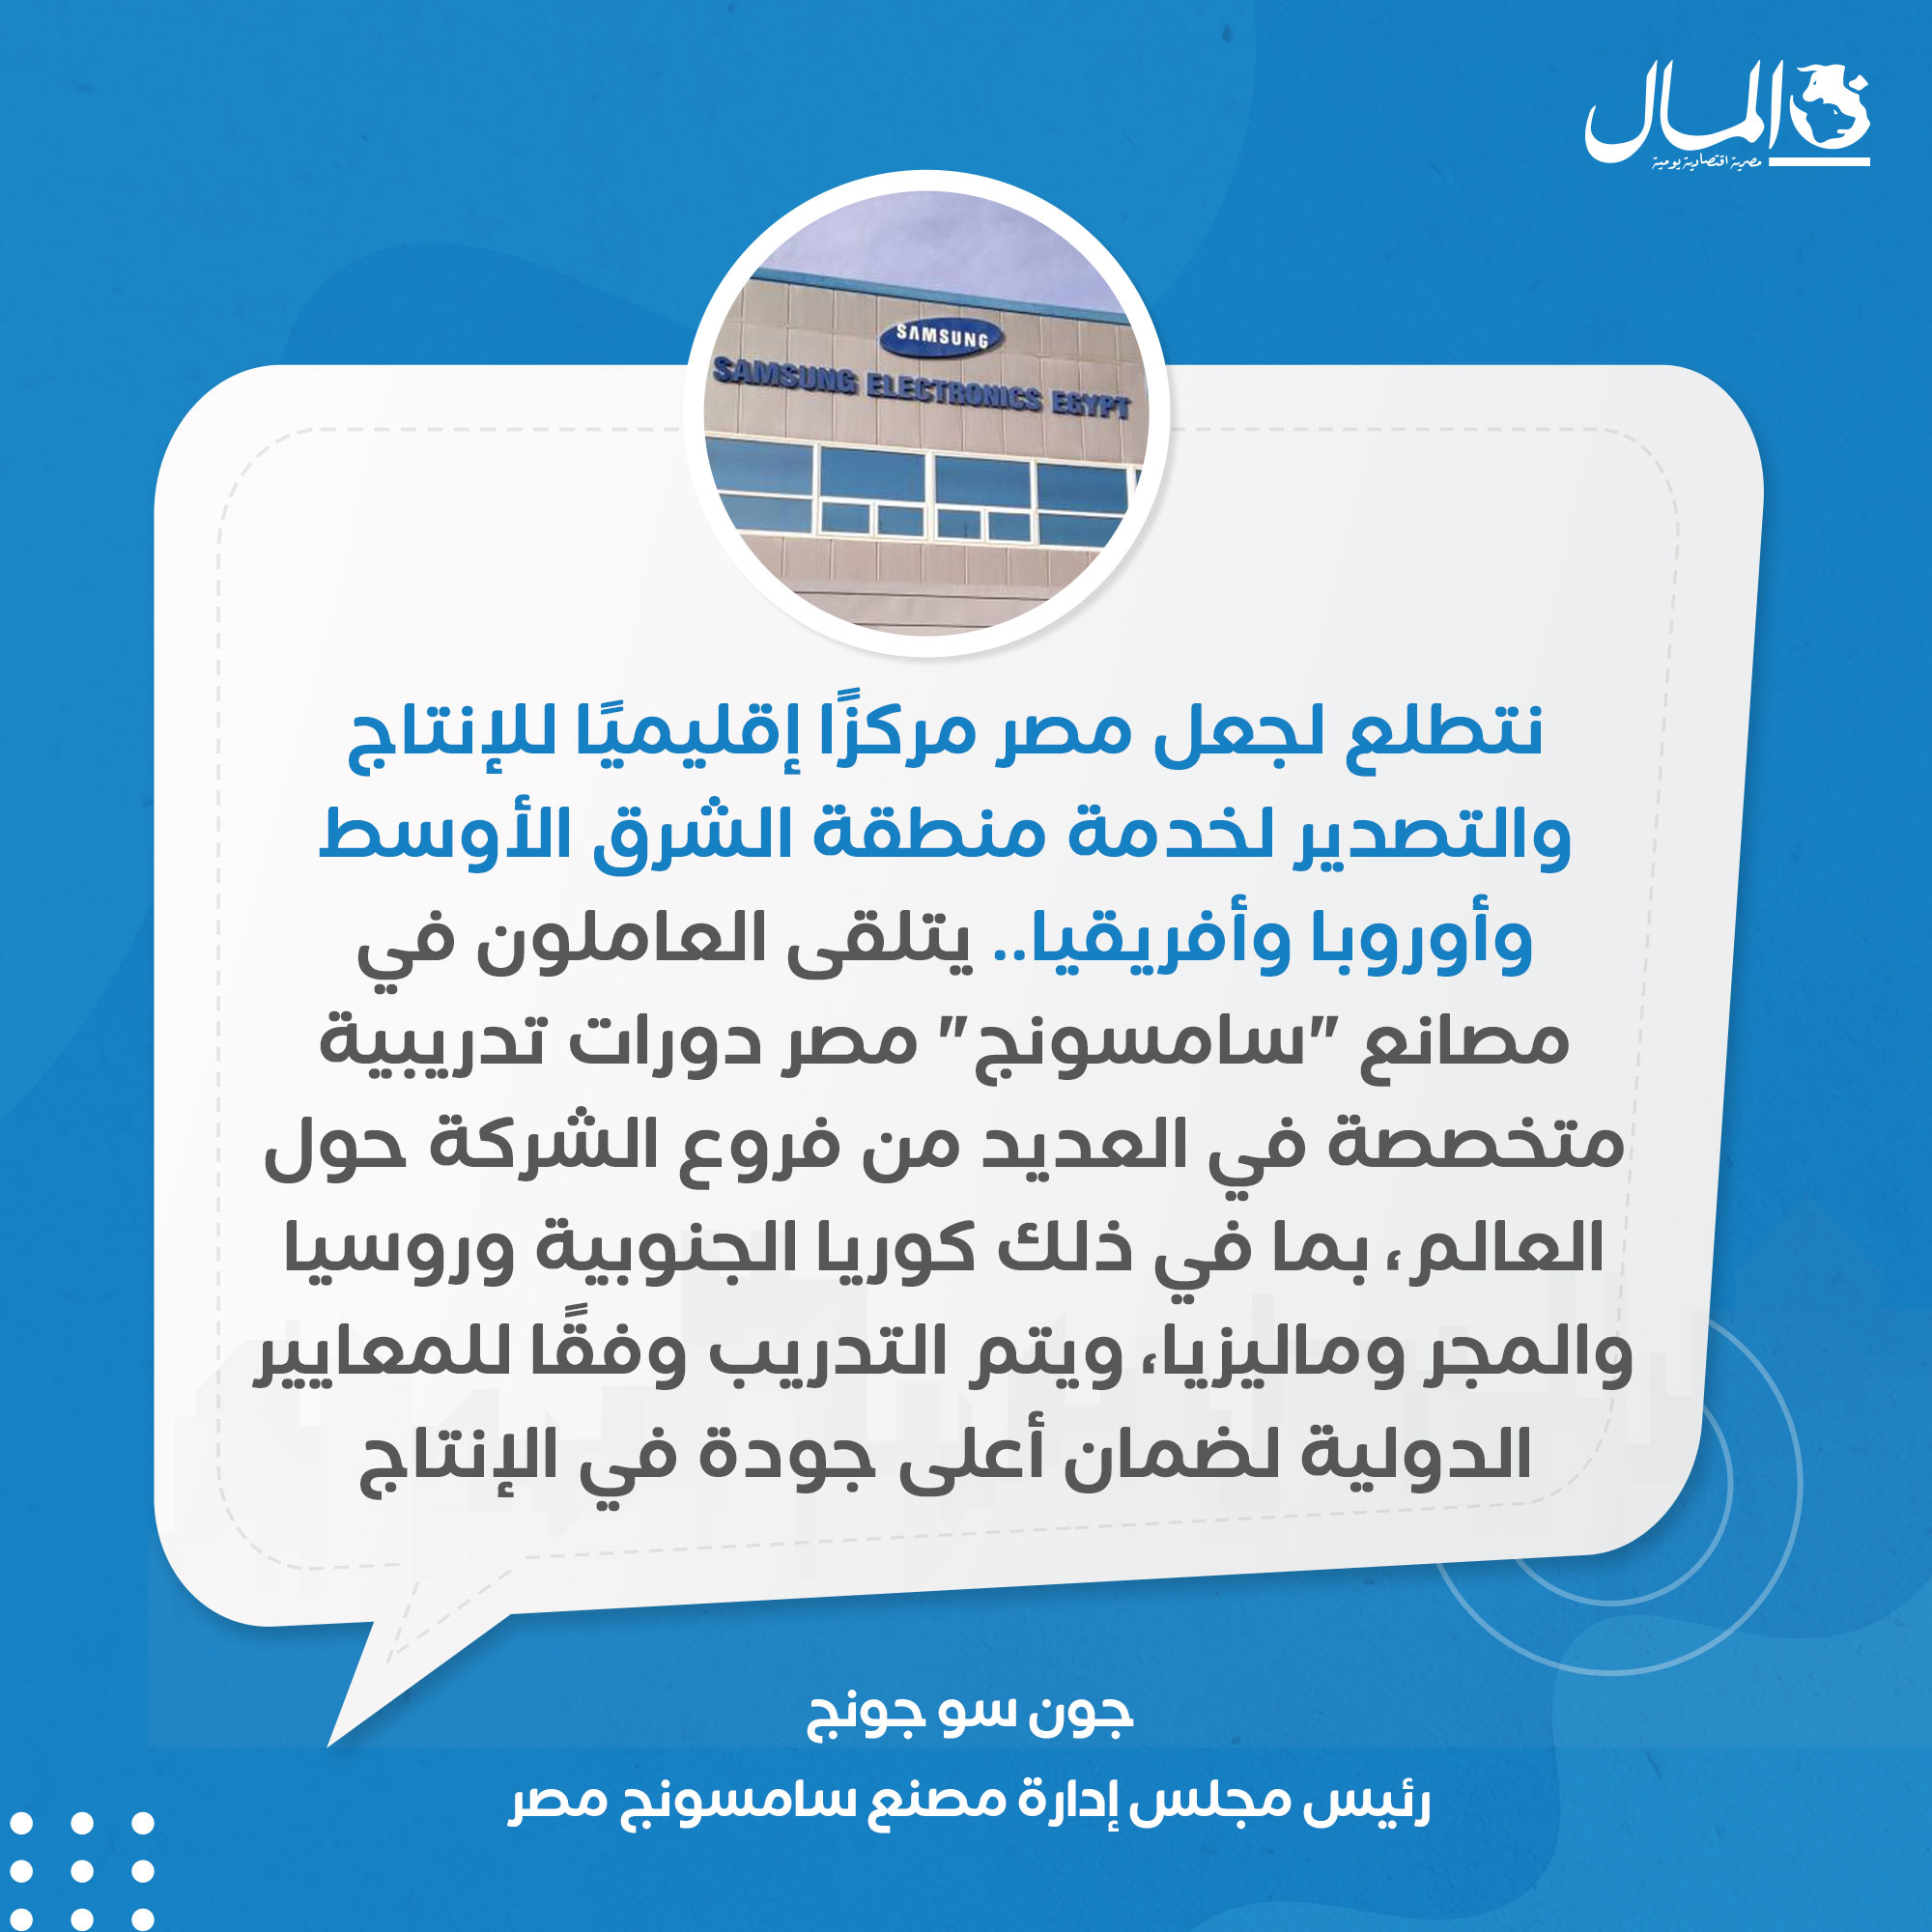 رئيس مجمع مصانع سامسونج للإلكترونيات - مصر يقول أن شركته تصدر 85% من إنتاج الشاشات إلى الخارج 